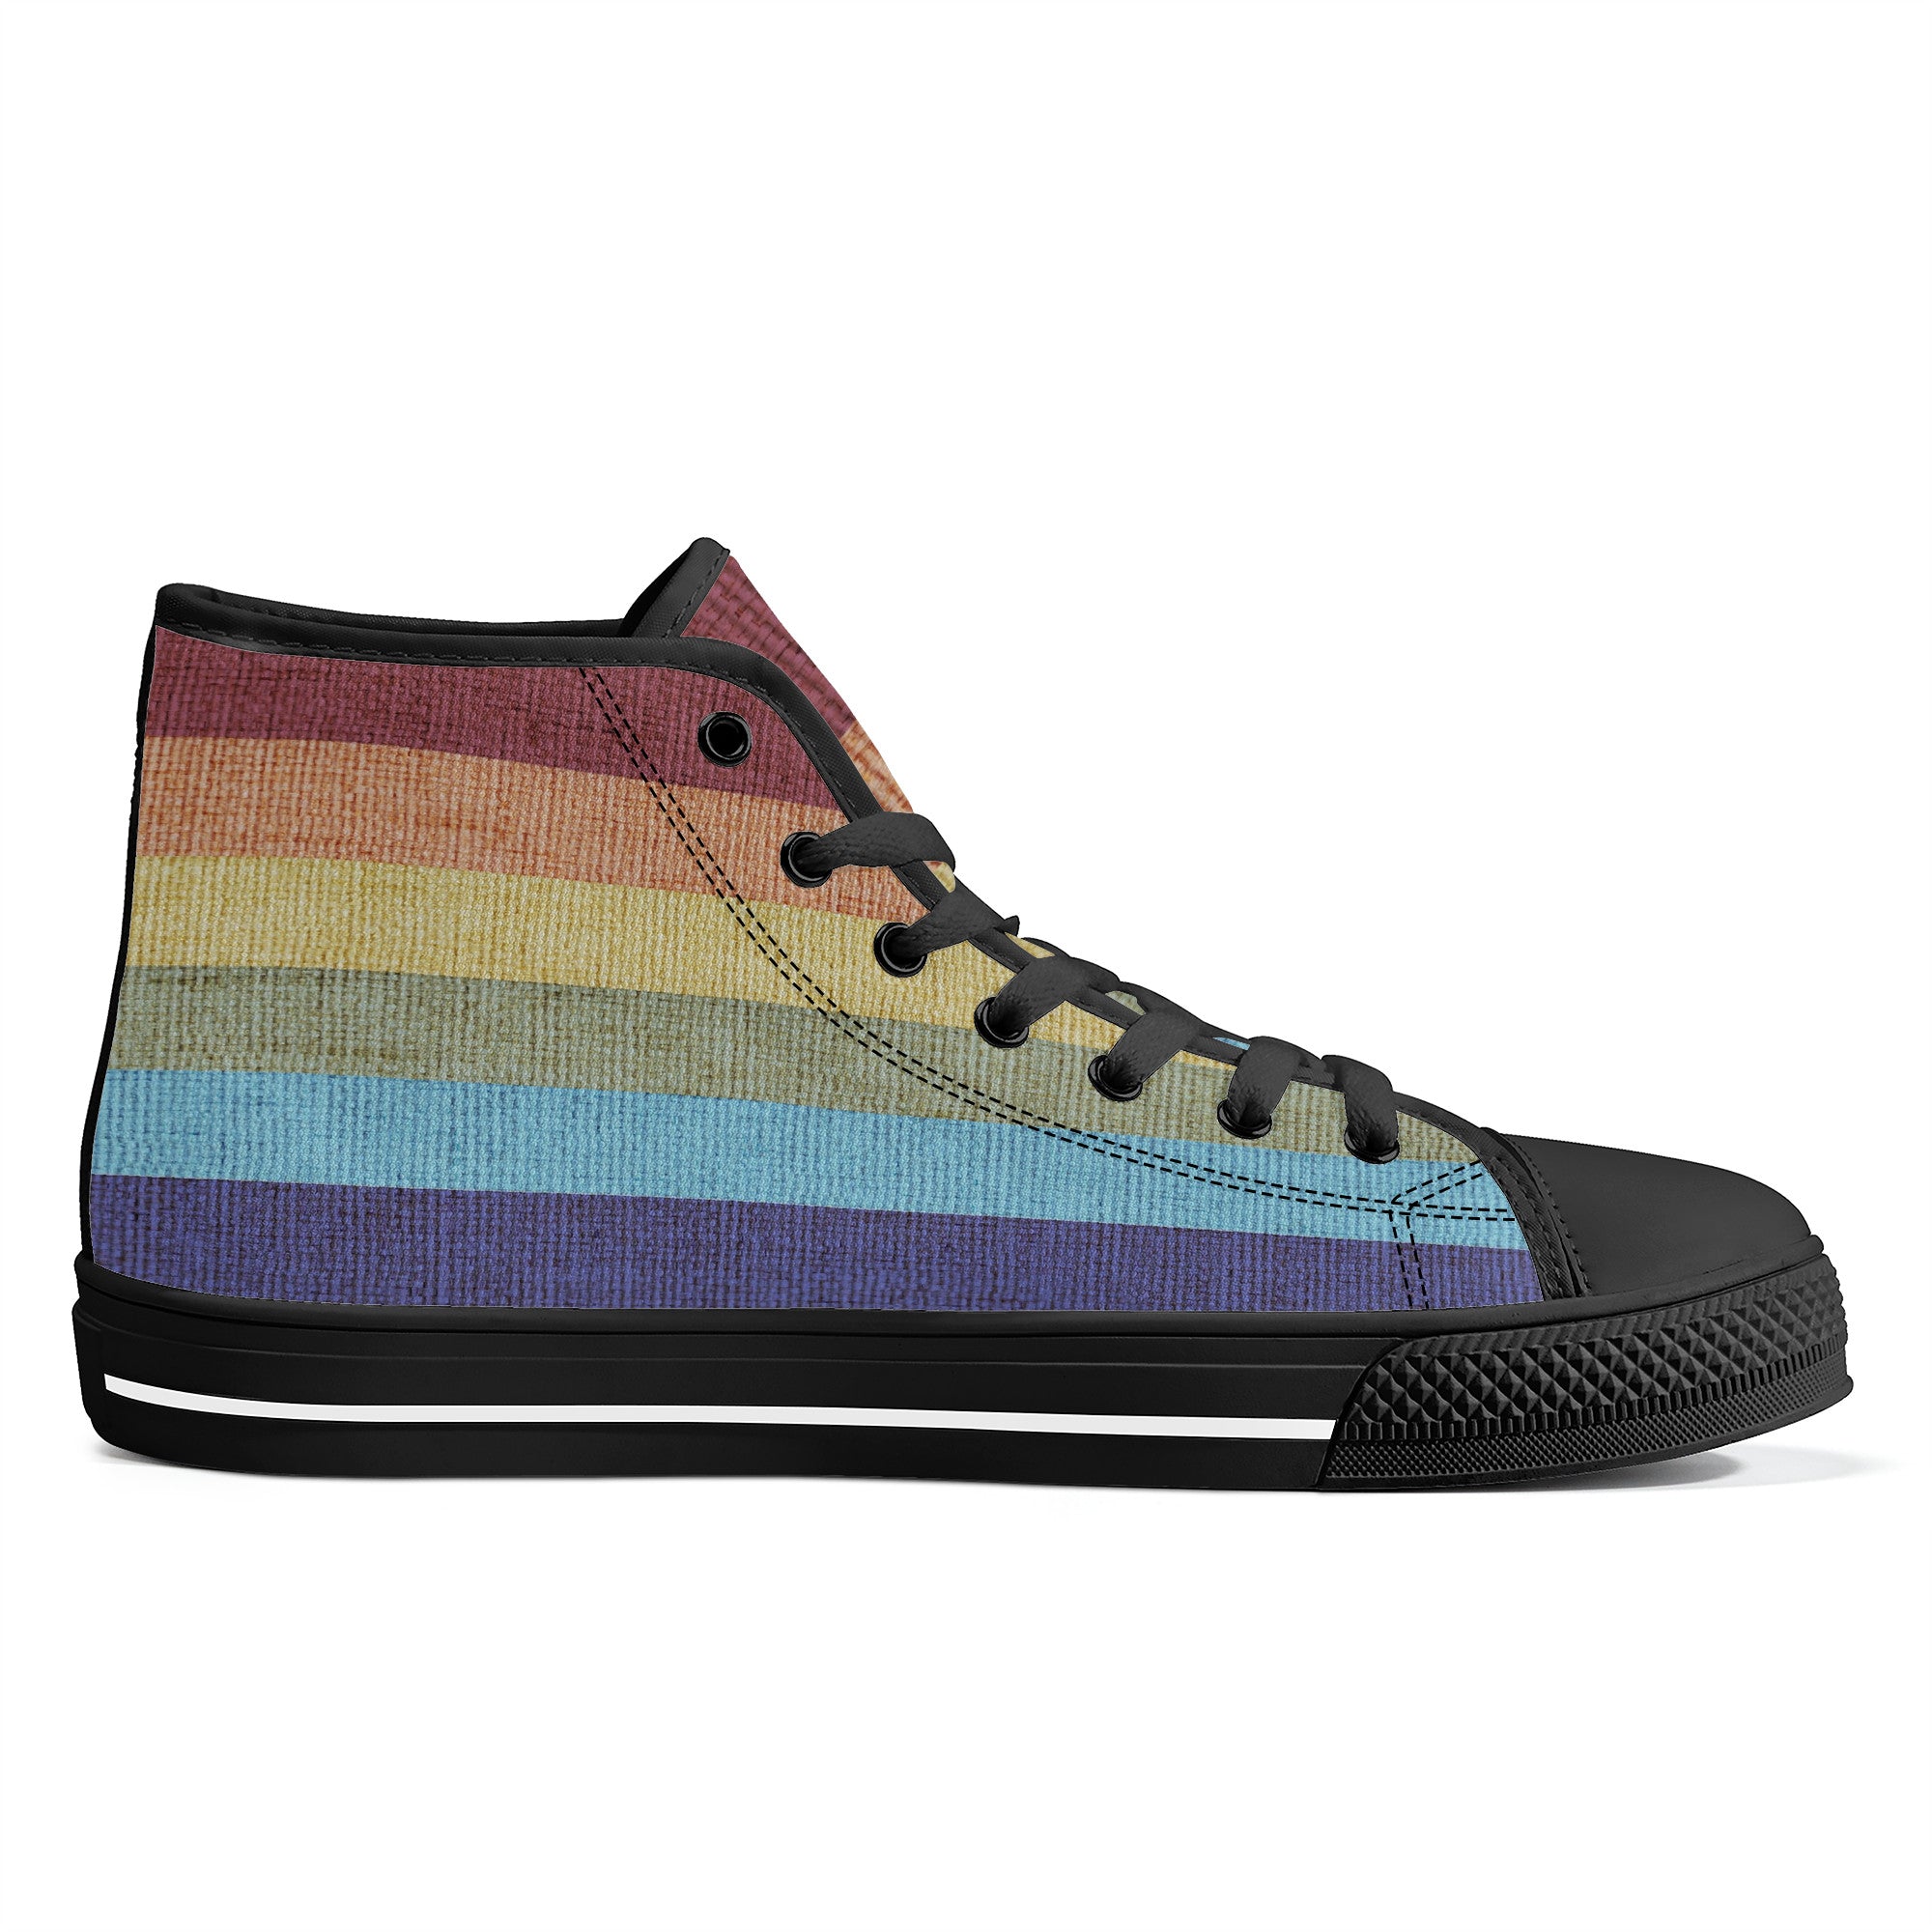 Cool shoes by Gayla Fox | High Top Customized | Shoe Zero